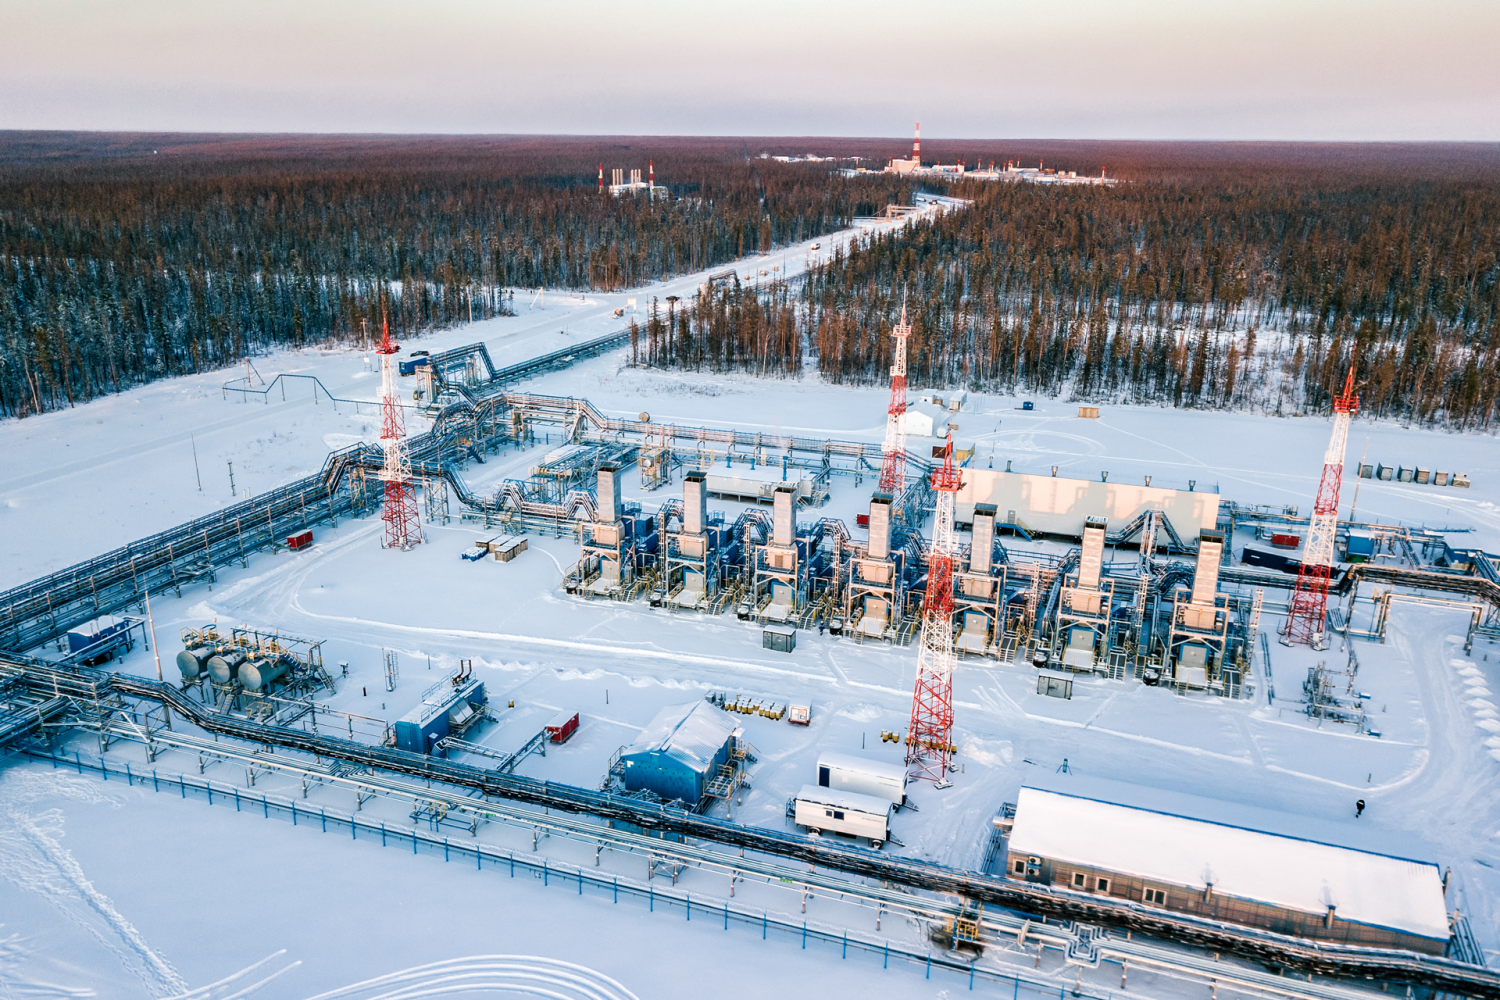 Đặc điểm pháp lý nổi bật trong qui định đối với việc sử dụng tài nguyên dầu và khí của Liên bang Nga (Phần IX)